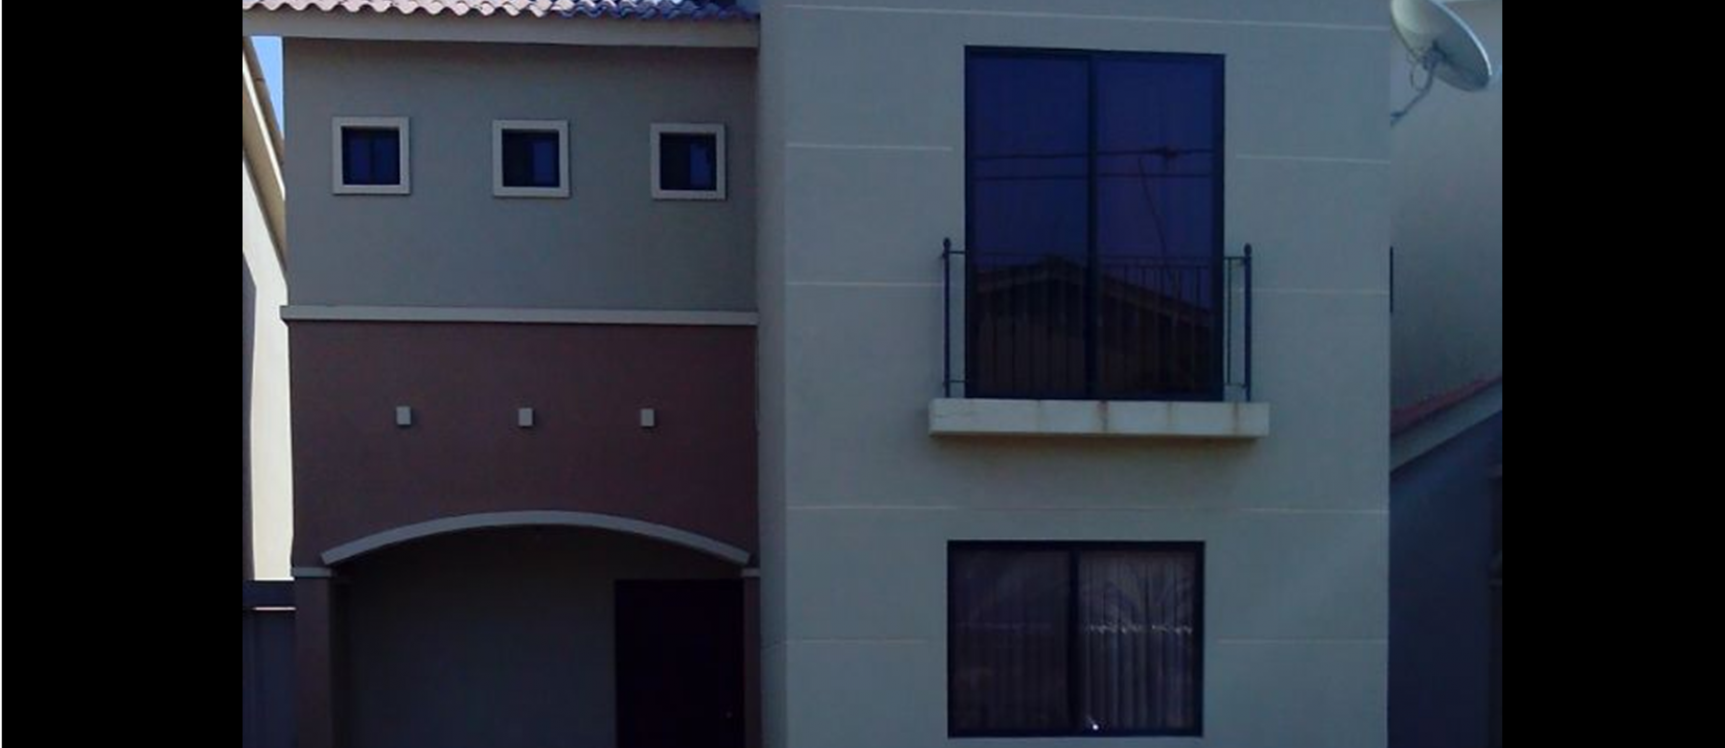 GeoBienes - Casa en venta en Plaza Madeira - Vía a Samborondon - Plusvalia Guayaquil Casas de venta y alquiler Inmobiliaria Ecuador